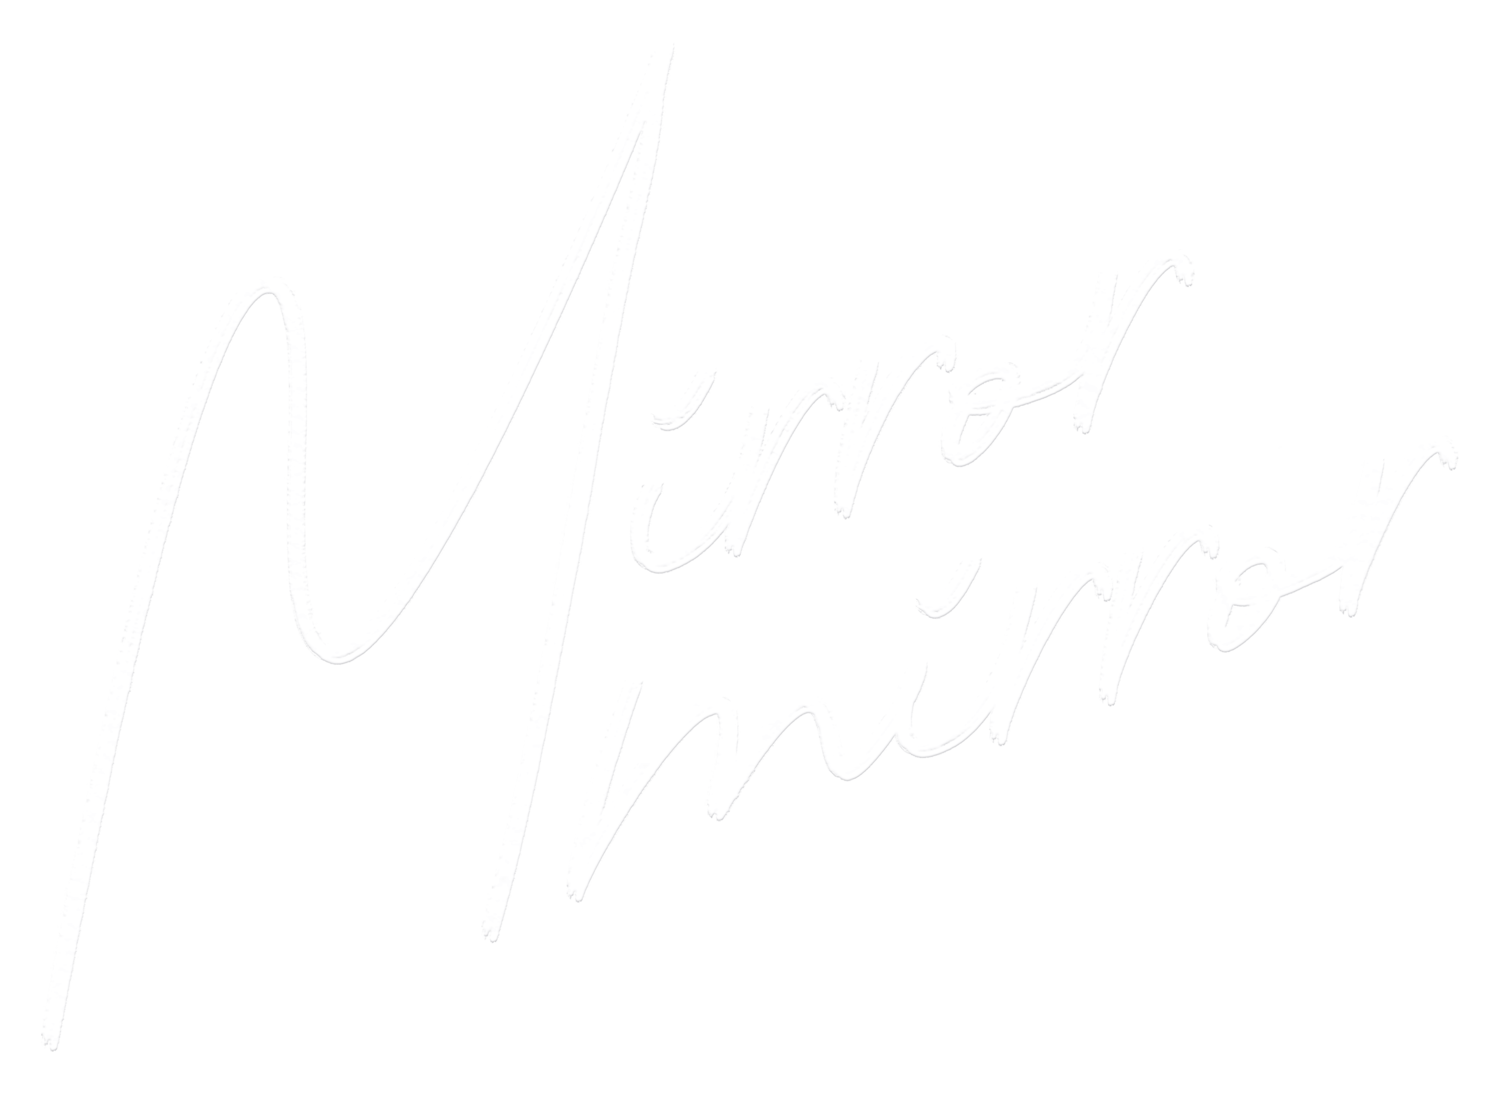 THE SUITE LIFE — MIRROR MIRRORMirror Mirror